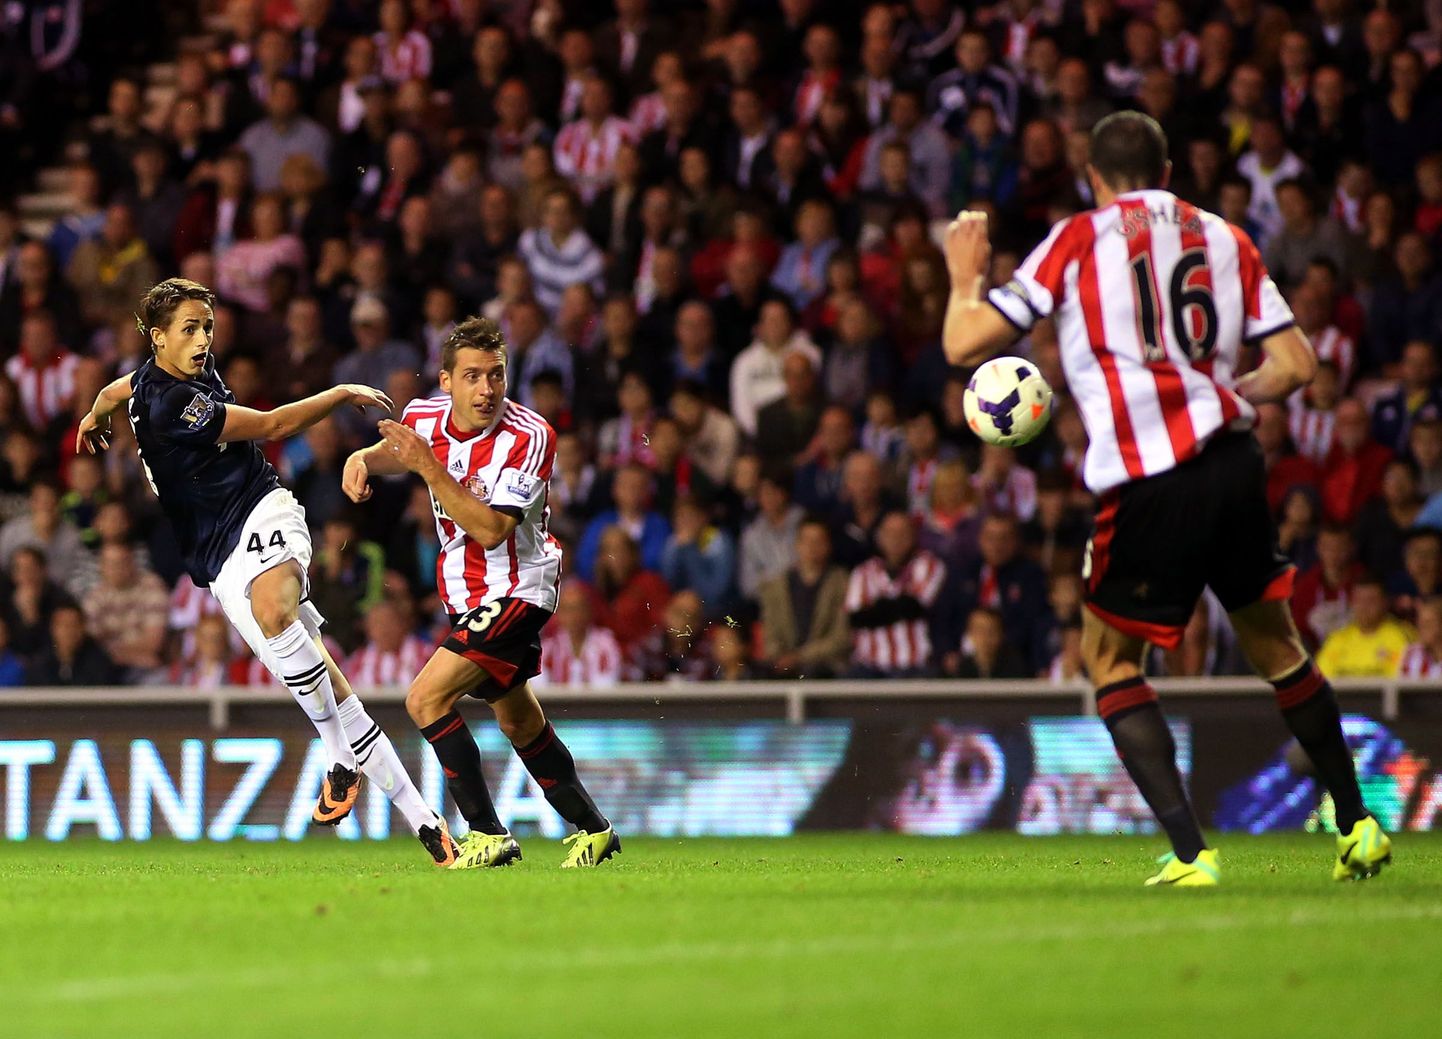 18-aastane Adnan Januzaj (mustas) lõi Sunderlandile kaks väravat